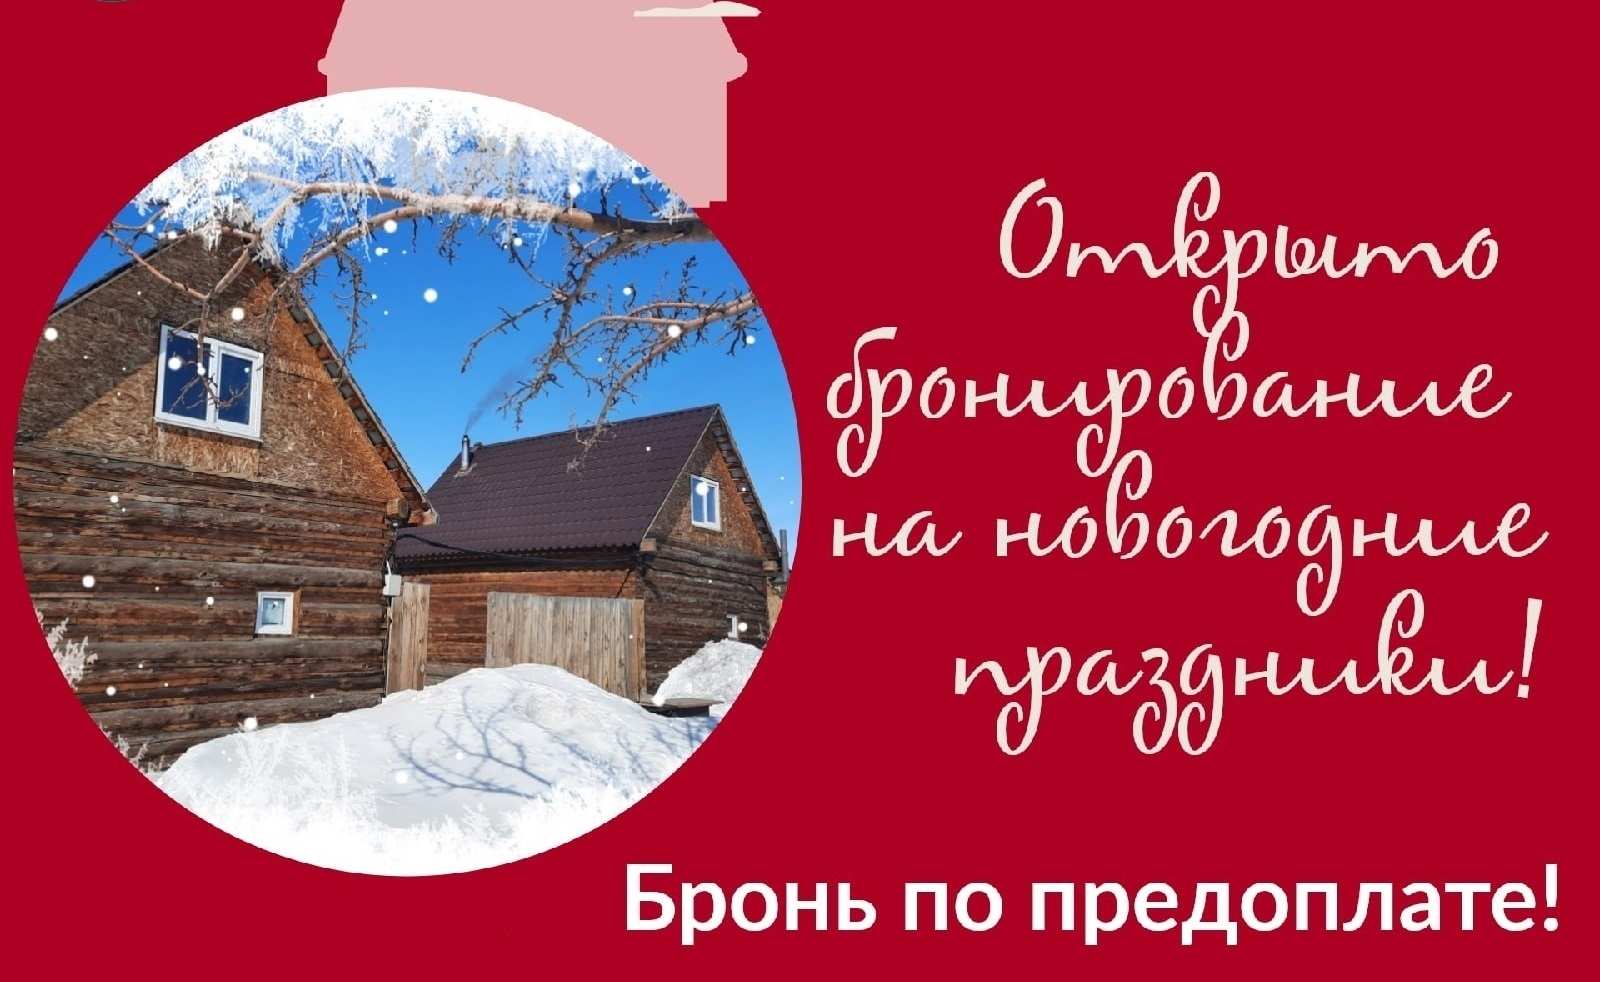 Открыто бронирование на новогодние праздники в Банях на дровах у Кузьмича